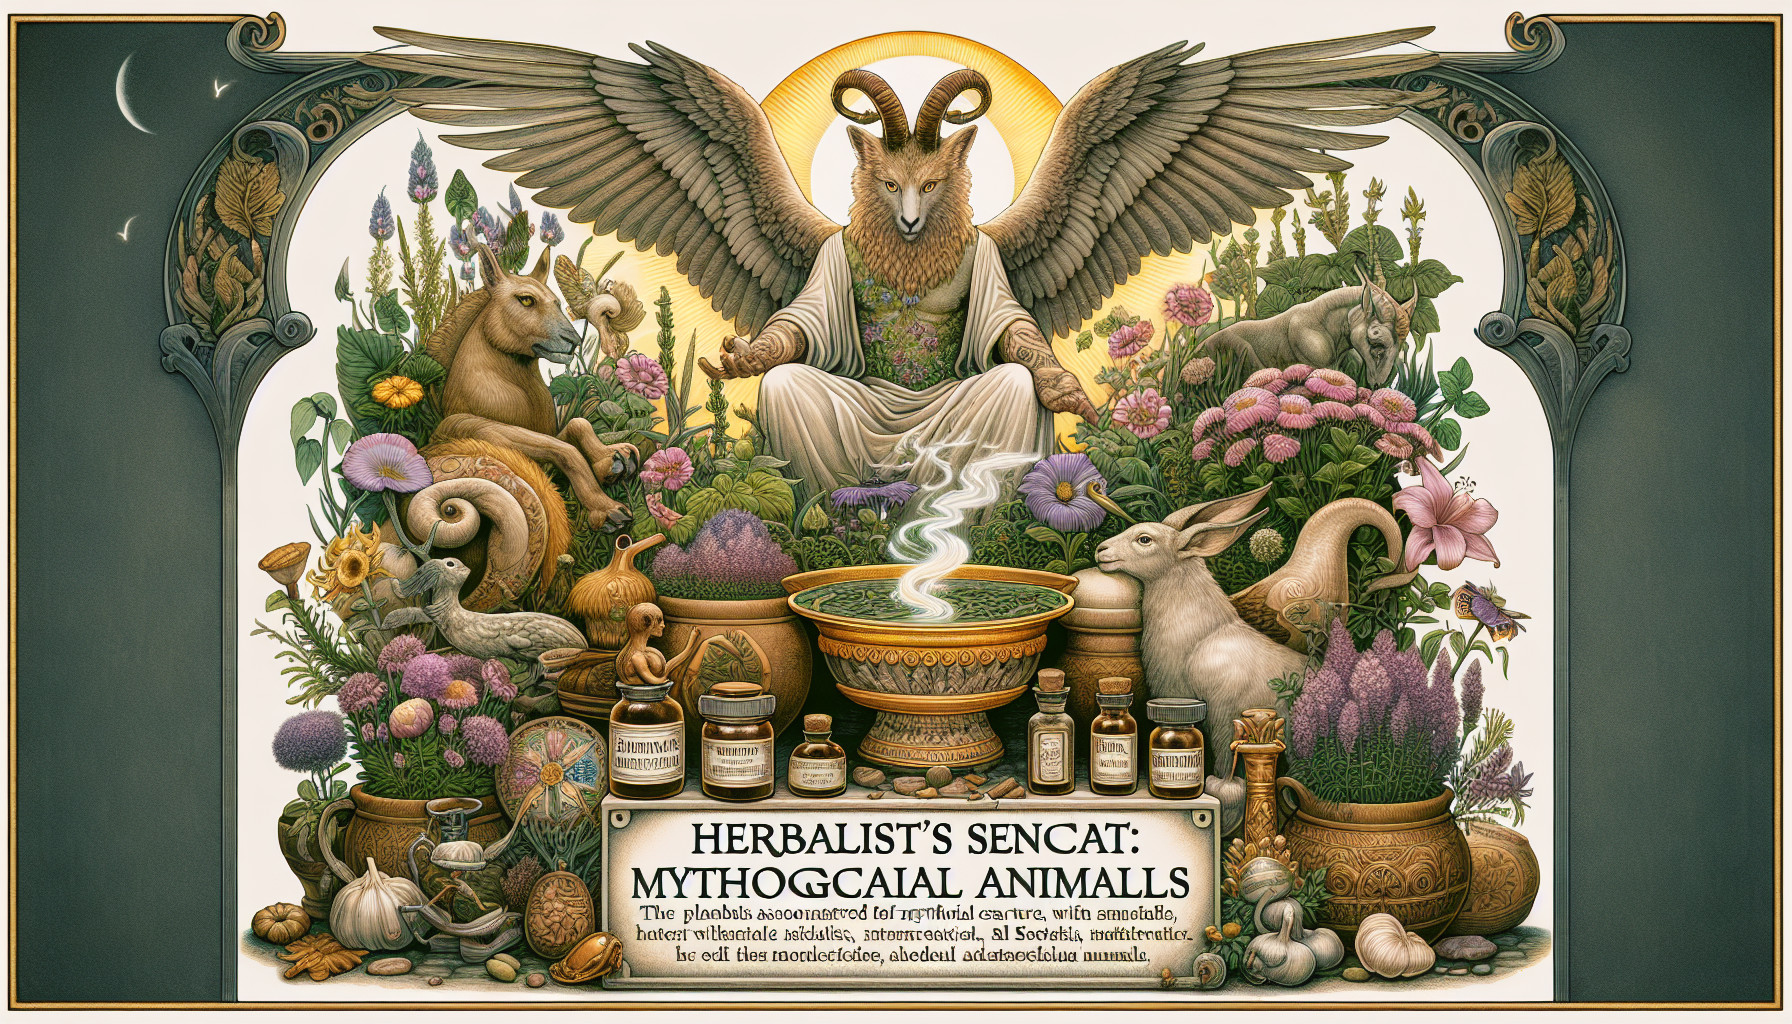 Herbolaria Y Animales Mágicos: Plantas Asociadas Con Seres Mitológicos